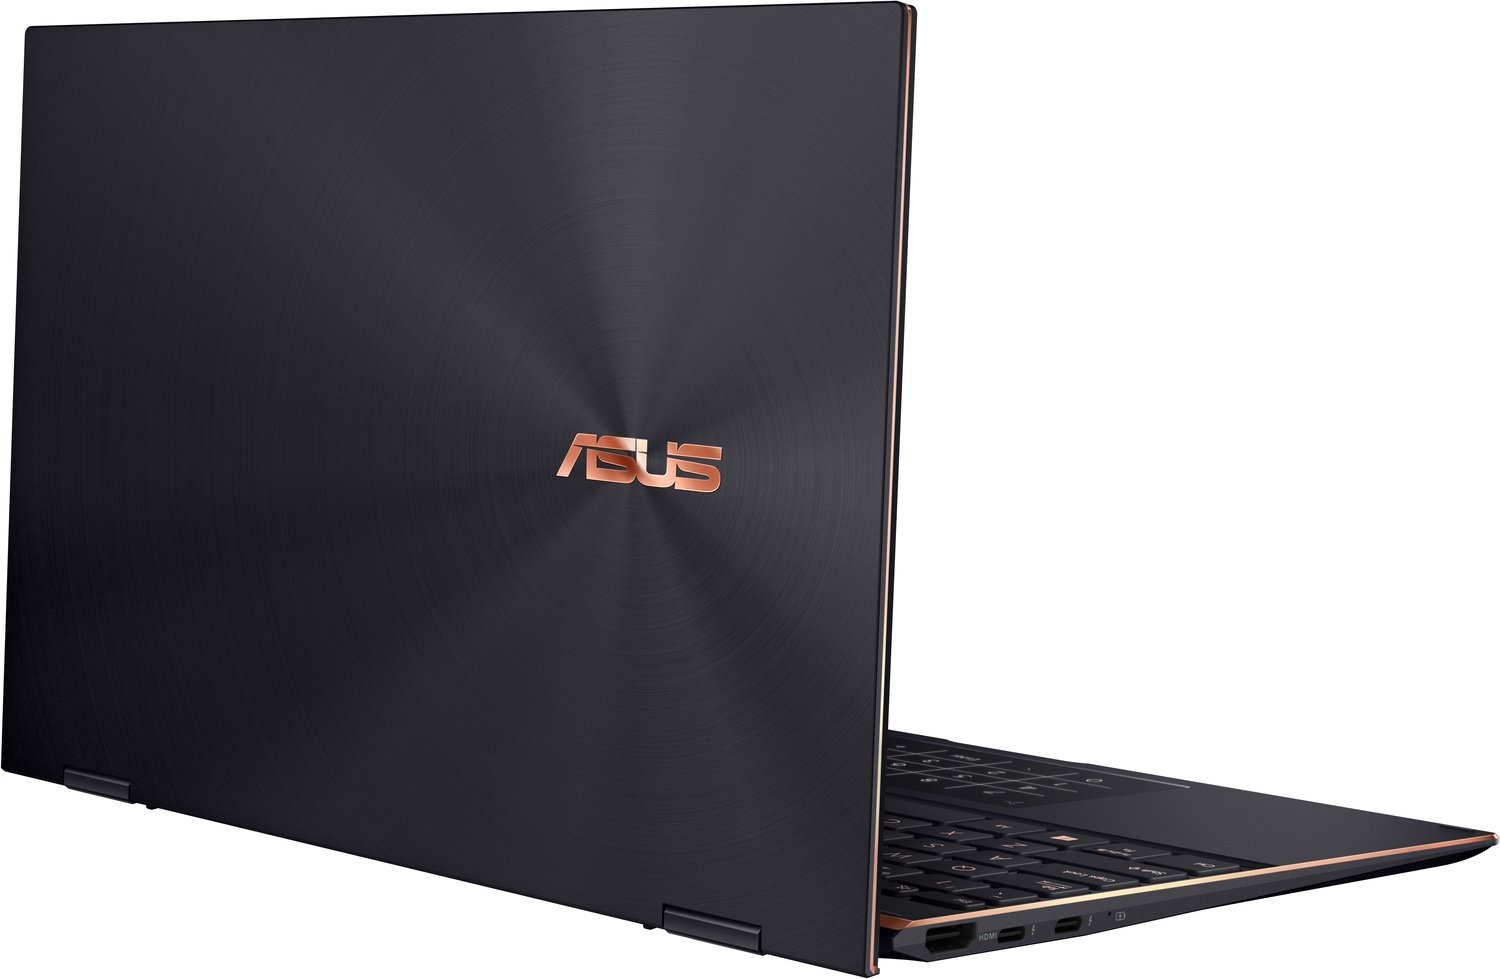 Ноутбук ASUS Zenbook Flip S OLED UX371EA-HL003R (90NB0RZ2-M07300)фото